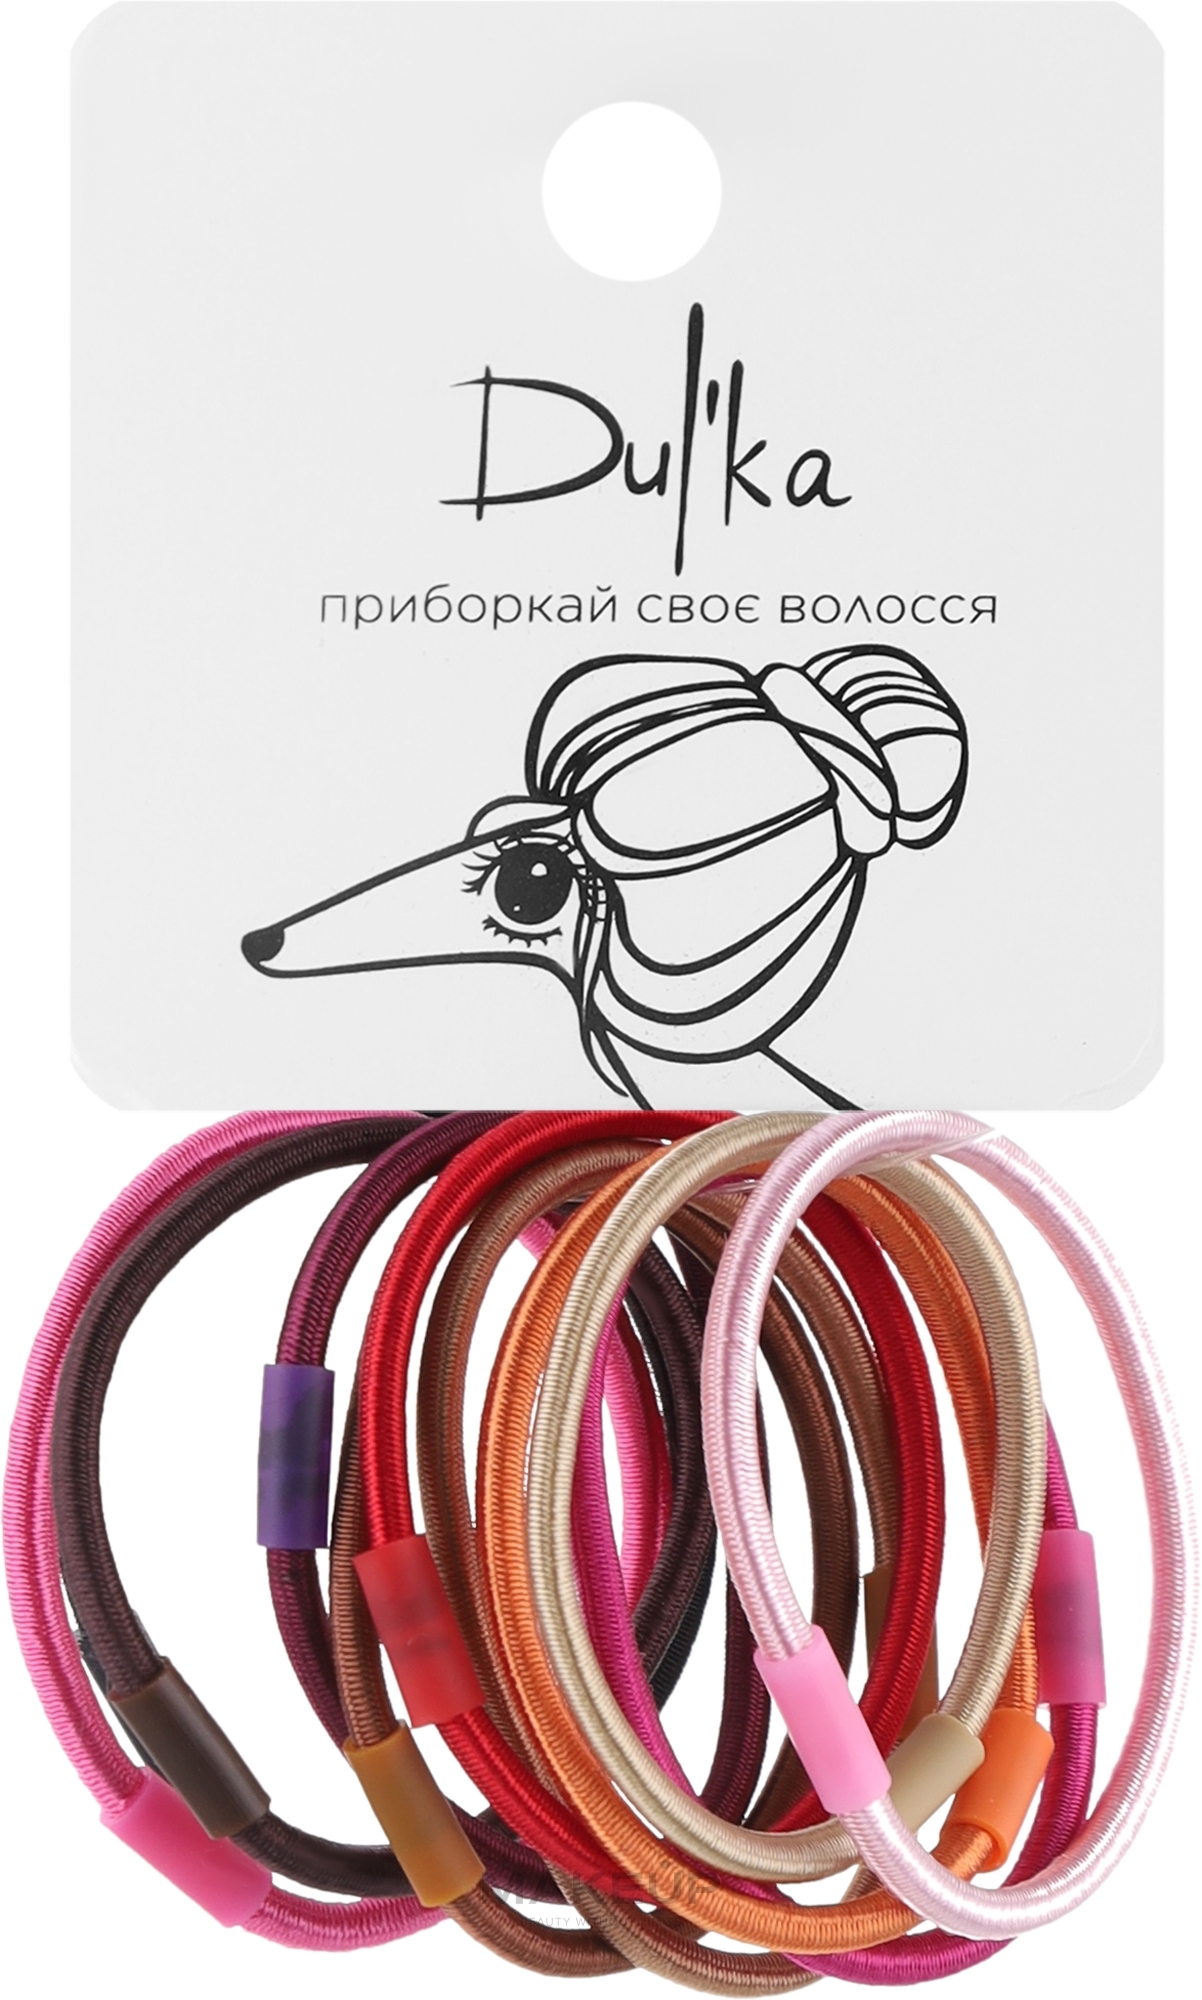 Набор разноцветных резинок для волос UH717715, 11 шт - Dulka  — фото 11шт